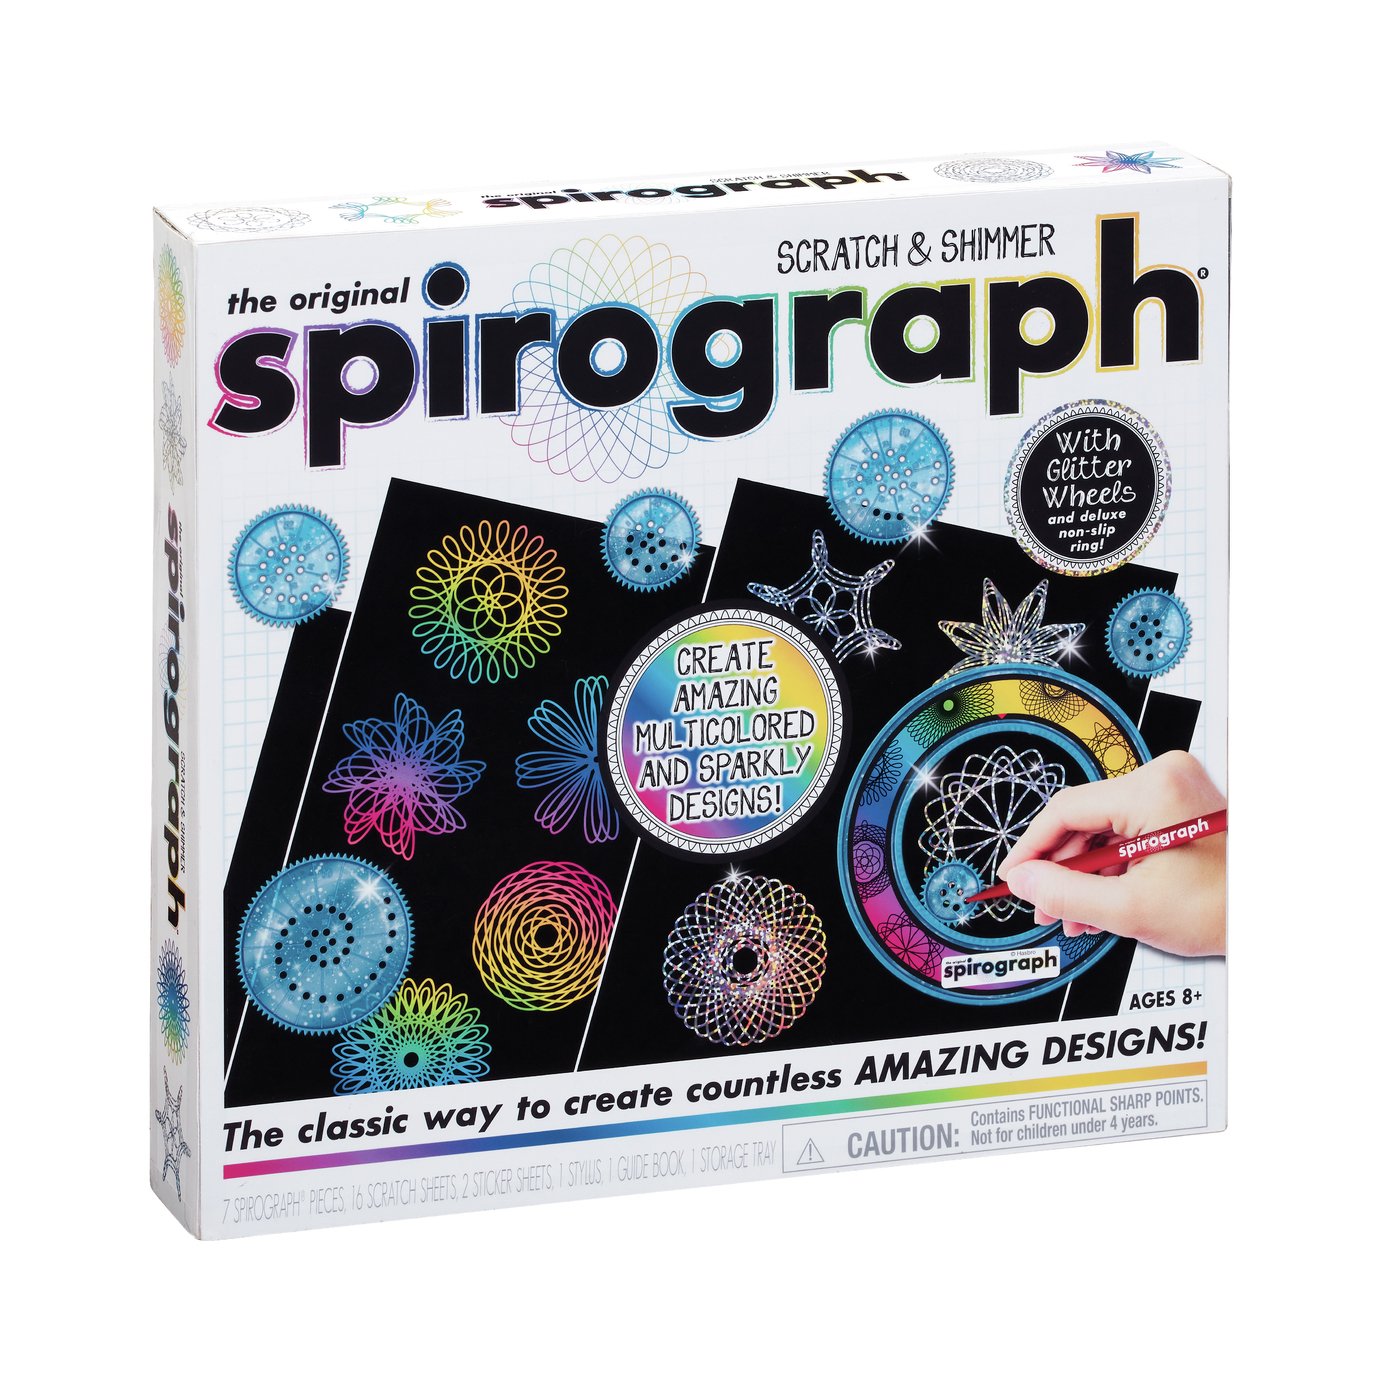 Original Spirograph Scratch & Shimmer Set Review